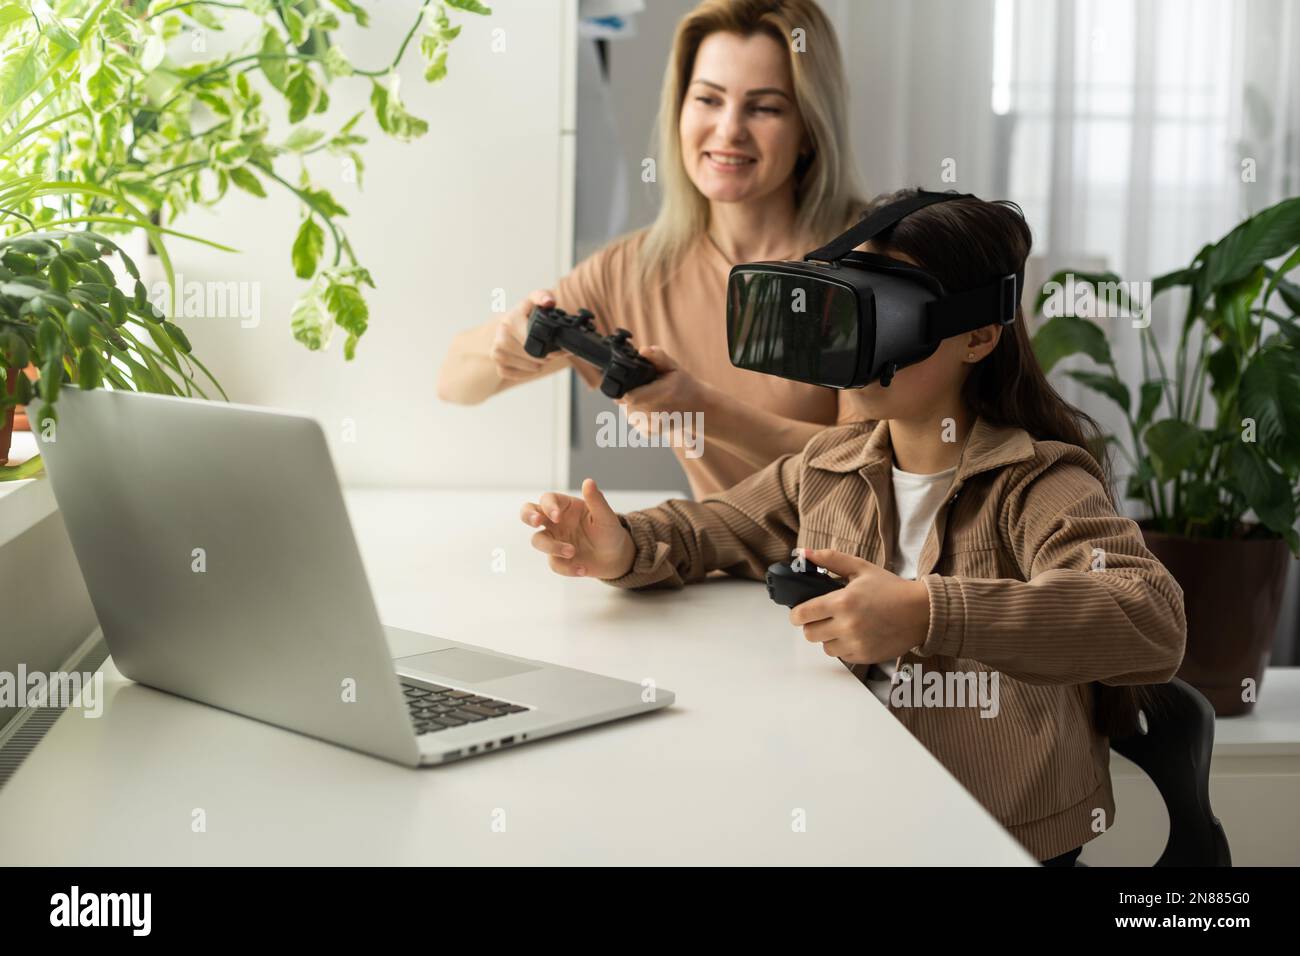 Familien und neue Technologien. Lächelnde Arbeit-zu-Hause-Mutter, die mit ihrer Tochter einen VR-Helm trägt und die virtuelle Realität erforscht. Neugieriges Teenager-Mädchen Stockfoto